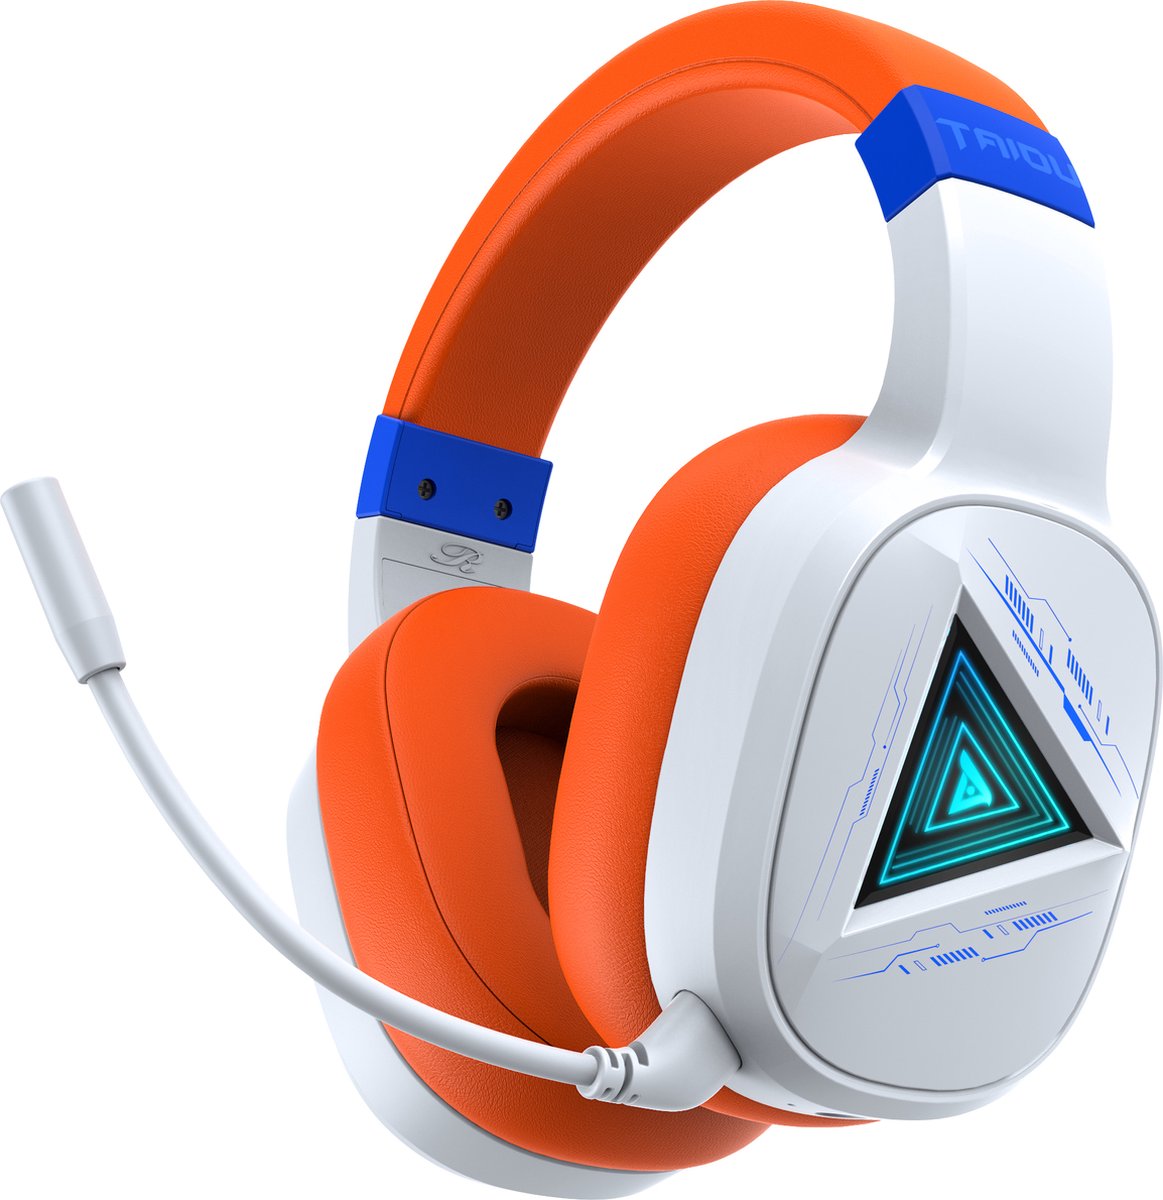 TAIDU 2.4GHz Draadloze Gaming Headset - Bluetooth koptelefoon - Multiplatform - Geschikt voor PS4/PS5, Nintendo Switch,Xbox One - Wit Oranje